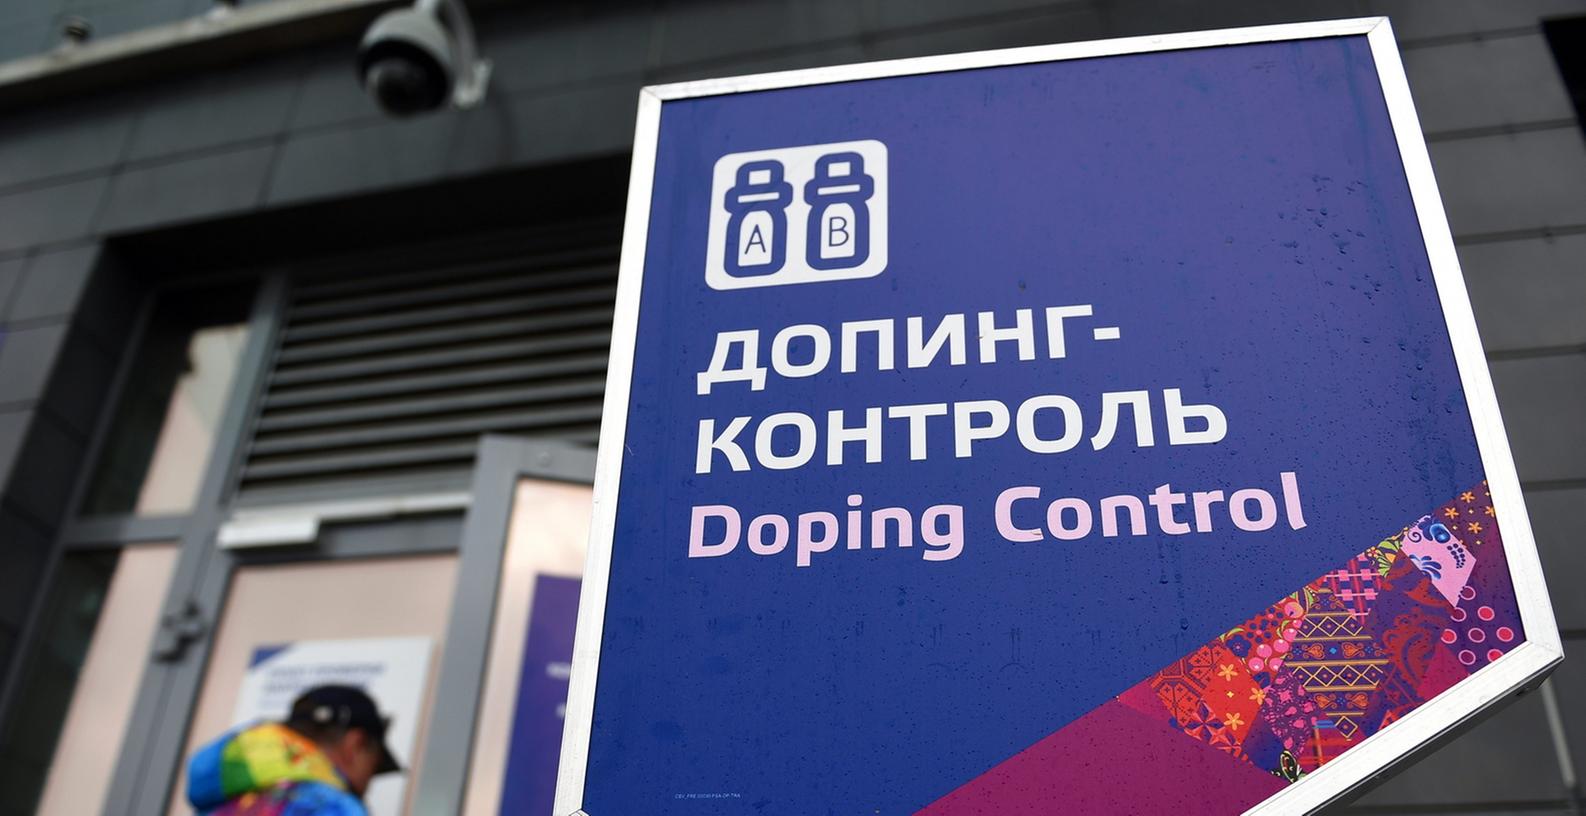 Ein Bericht ergab nun, dass an manchen Tagen nicht einmal die Hälfte der geplanten Dopingkontrollen durchgeführt werden konnten.